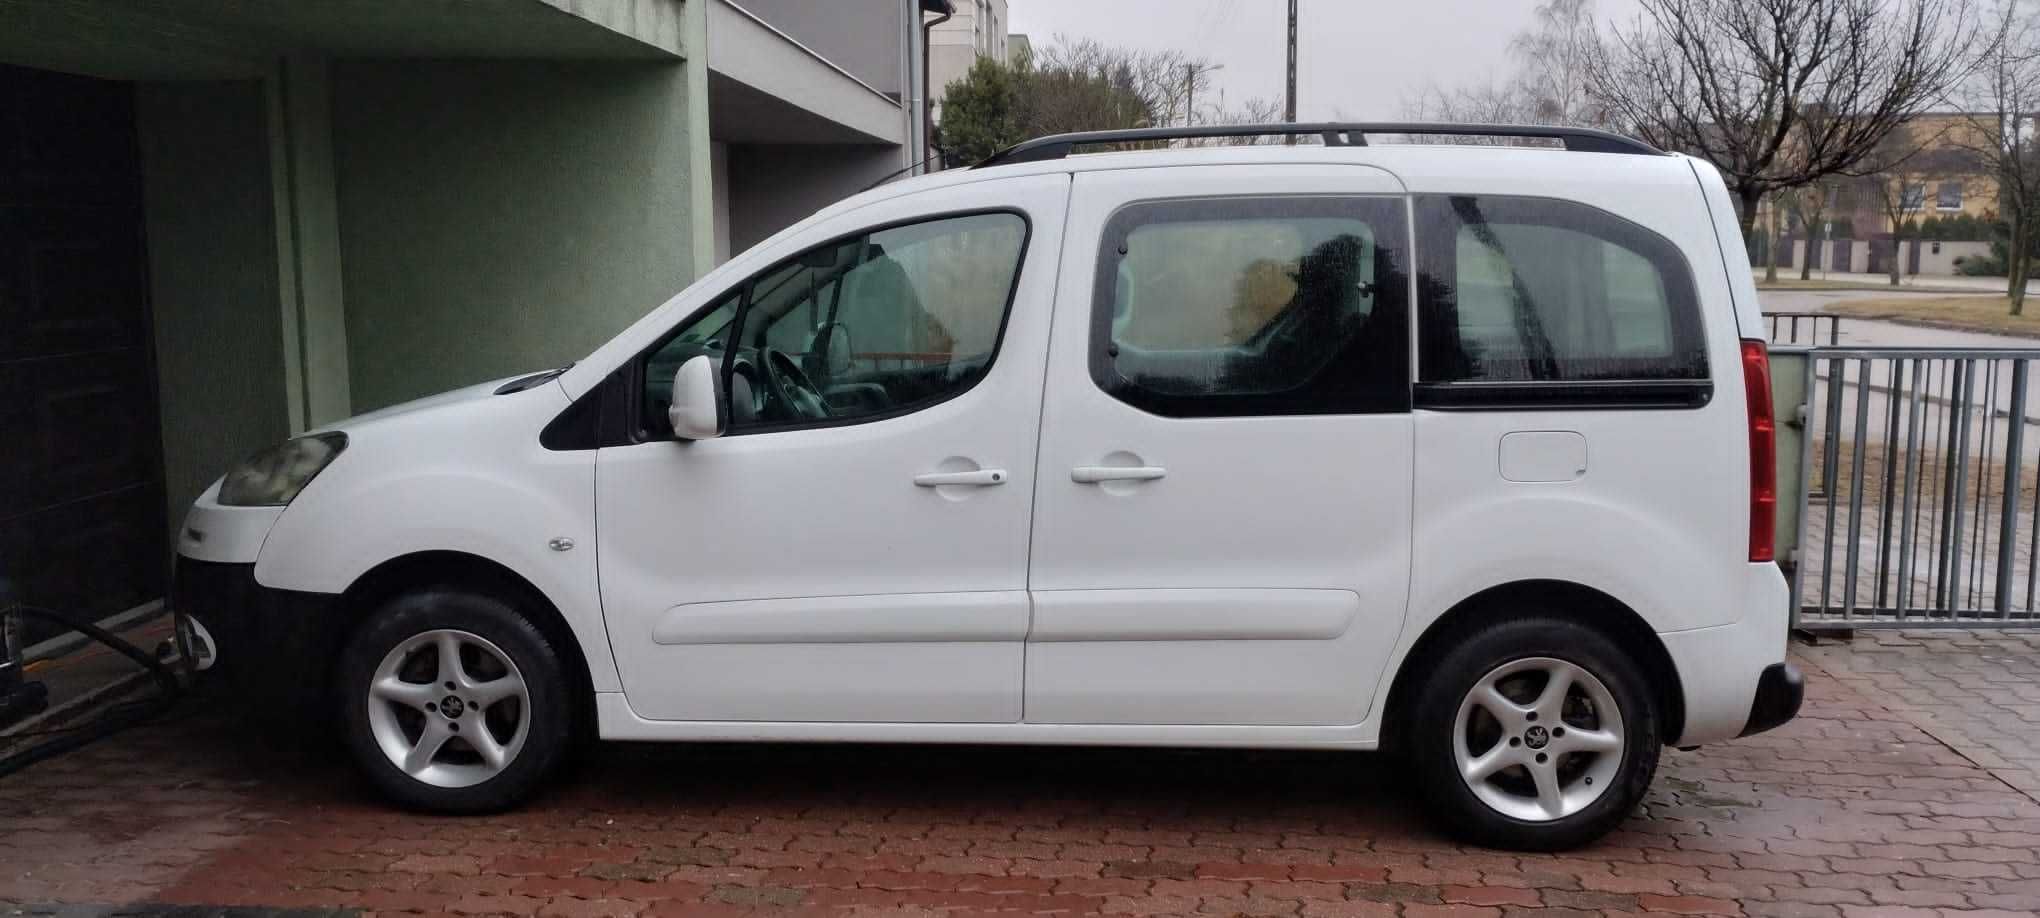 Peugeot Partner wersja dla niepełnosprawnych, 2012 rok